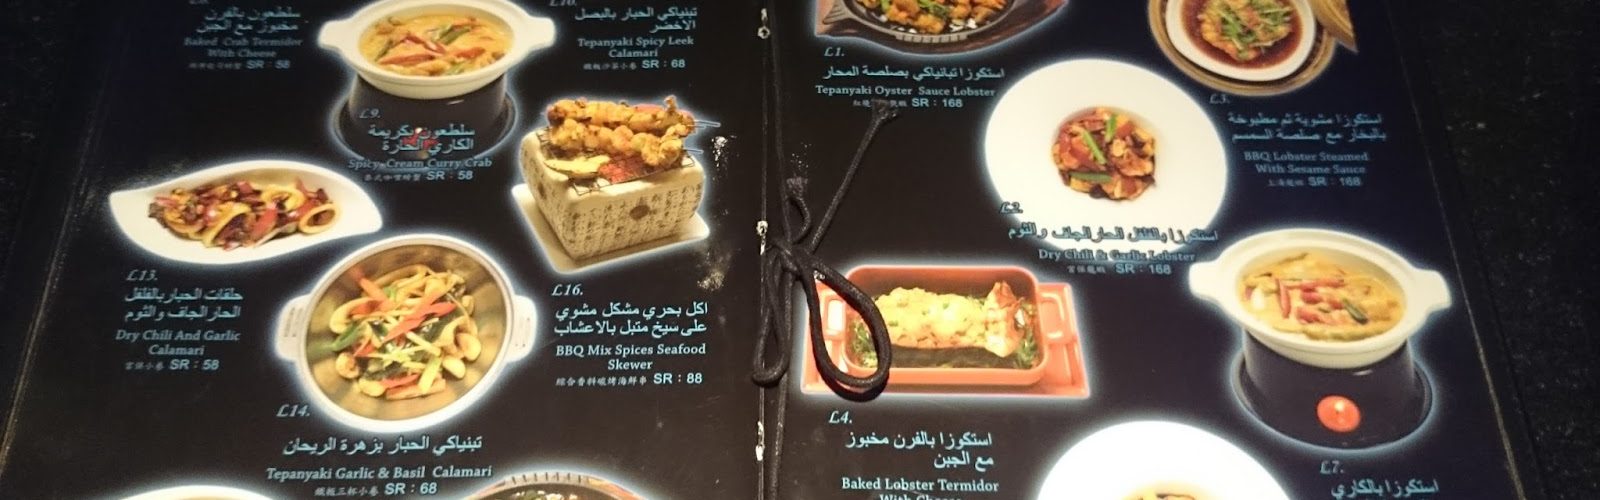 منيو مطعم الخليج الصيني في جدة بالصور والأسعار كافيهات جده افضل مقاهي جده